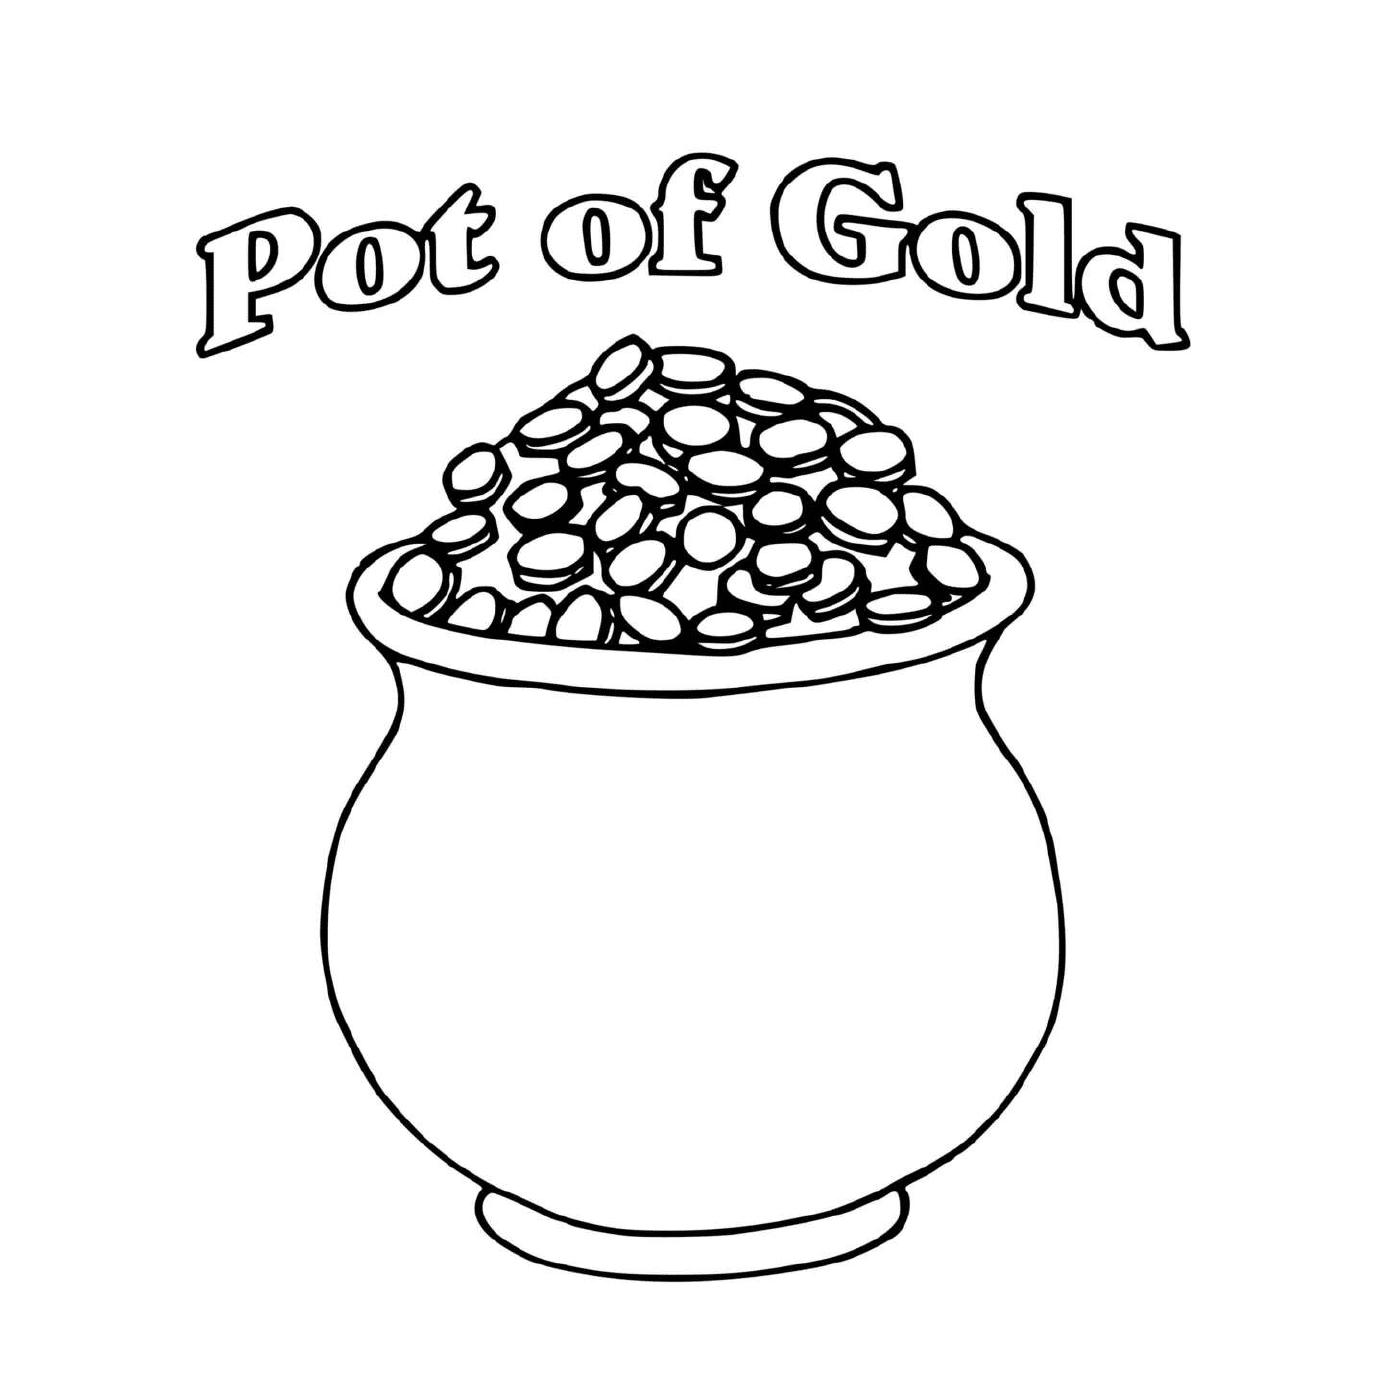  Горшок с золотом, наполненный монетами для Святого Патрика 